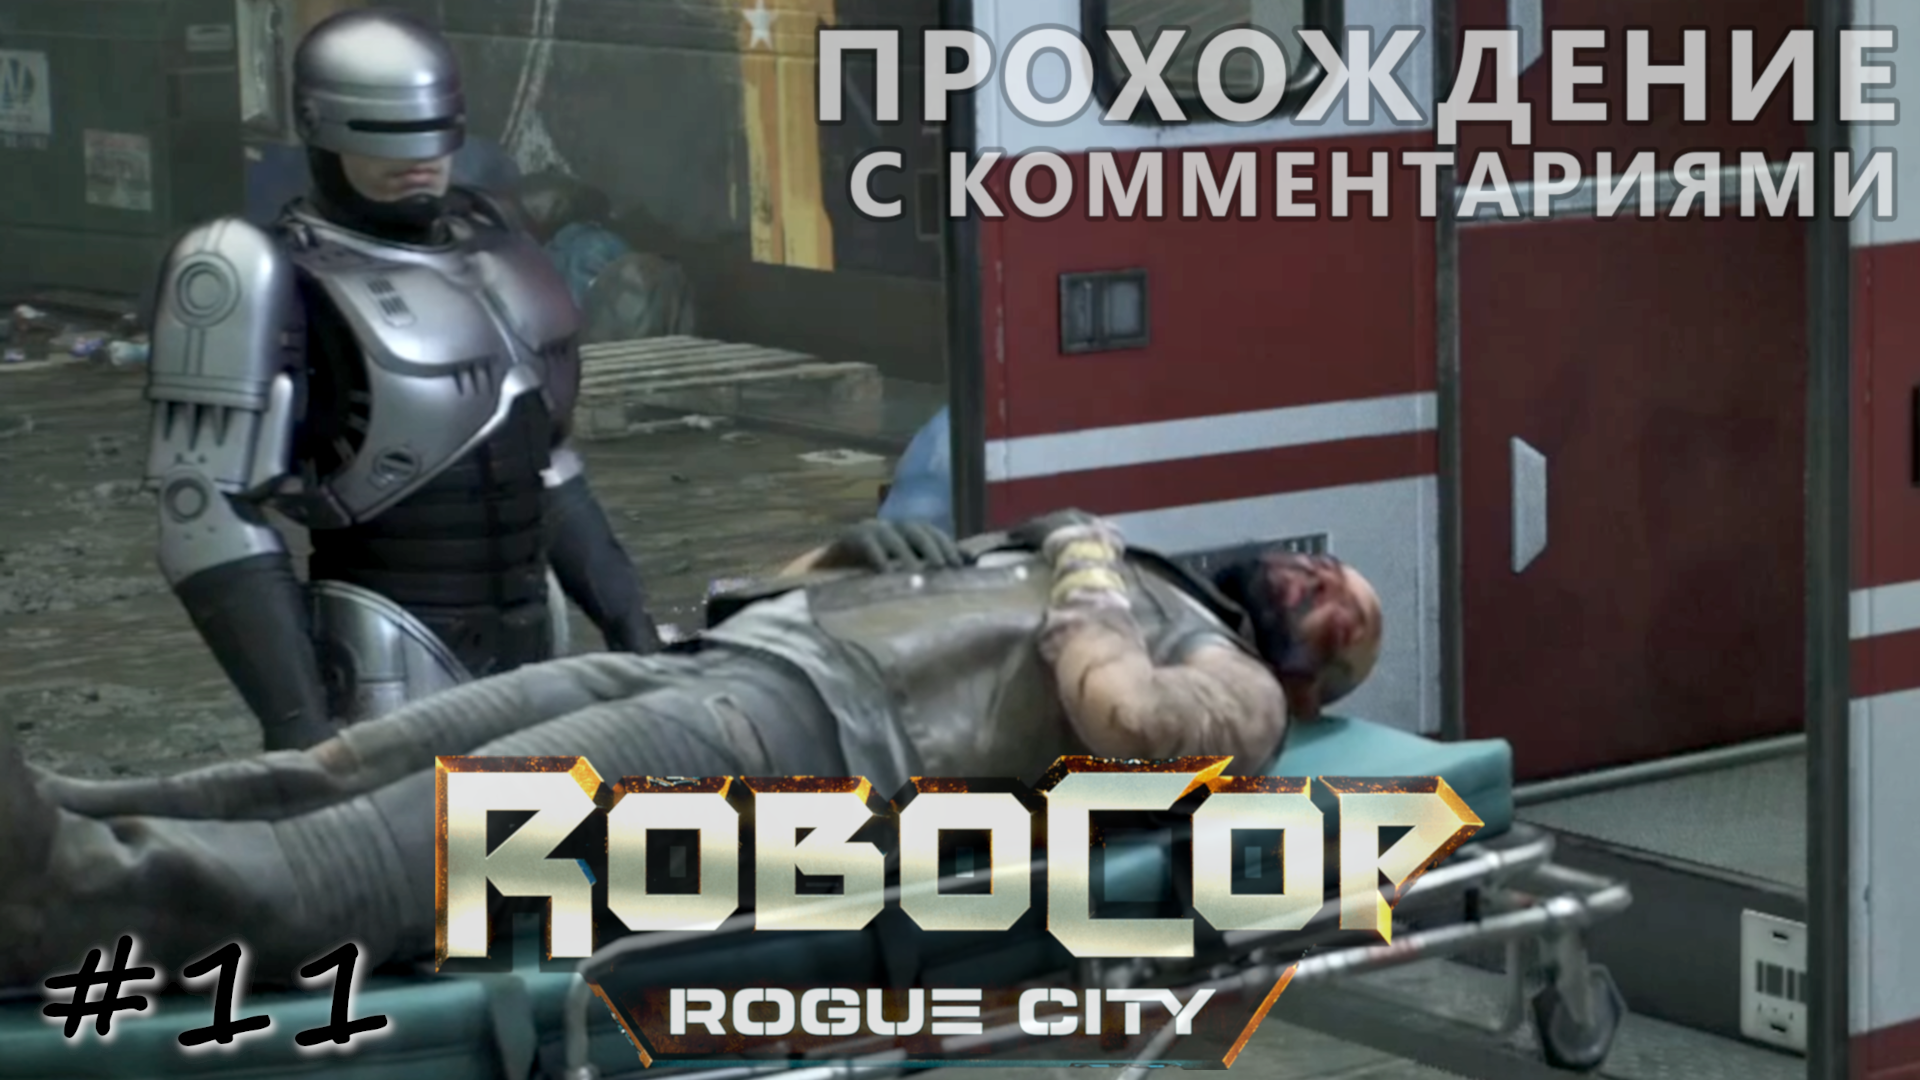 Главарь банды байкеров предан, спасён и арестован - #11 - RoboCop Rogue City